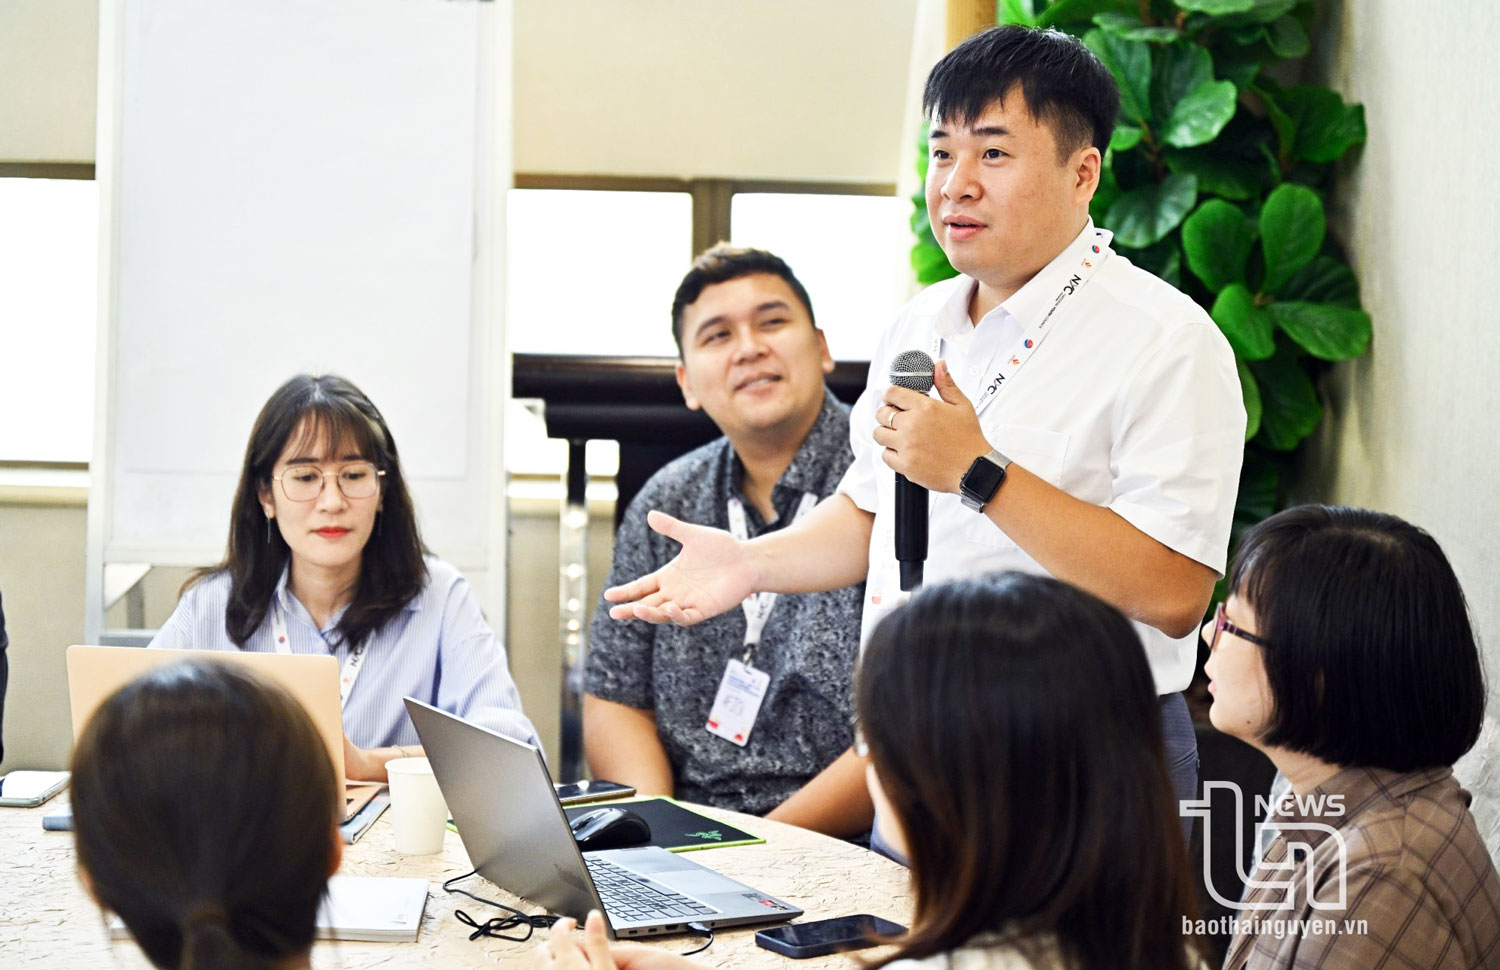 Tiến sĩ Trần Quang Quý tham dự Chương trình đối thoại lãnh đạo trẻ Việt Nam - Singapore do Ủy ban quốc gia về thanh niên Việt Nam và Hội đồng Thanh niên quốc gia Singapore phối hợp tổ chức.